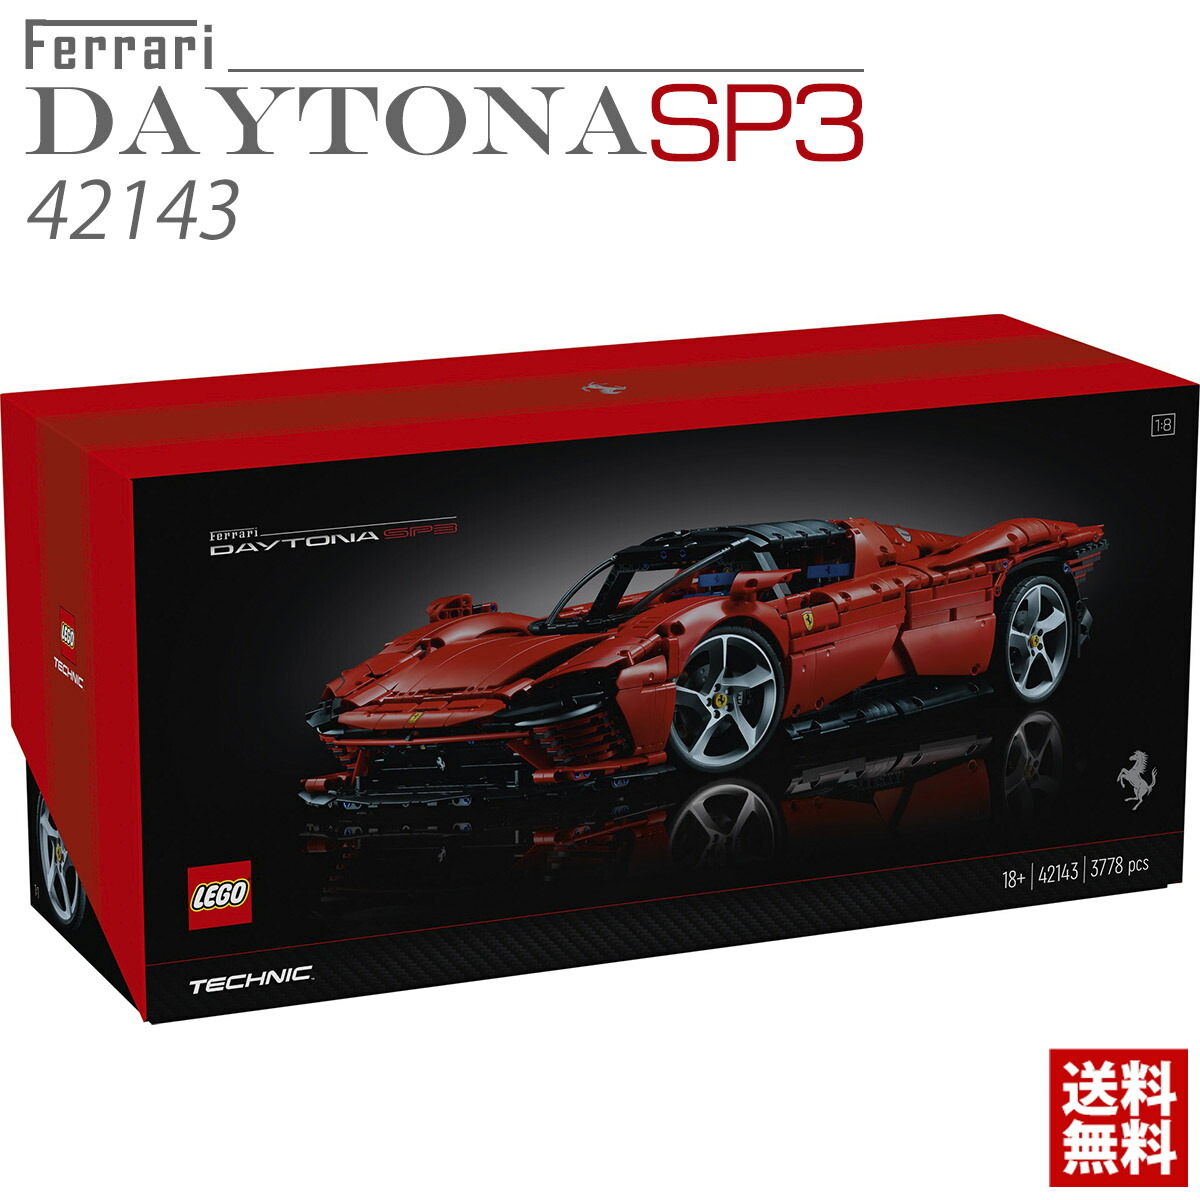 レゴ テクニック 42143 フェラーリ Daytona デイトナ SP3 LEGO 